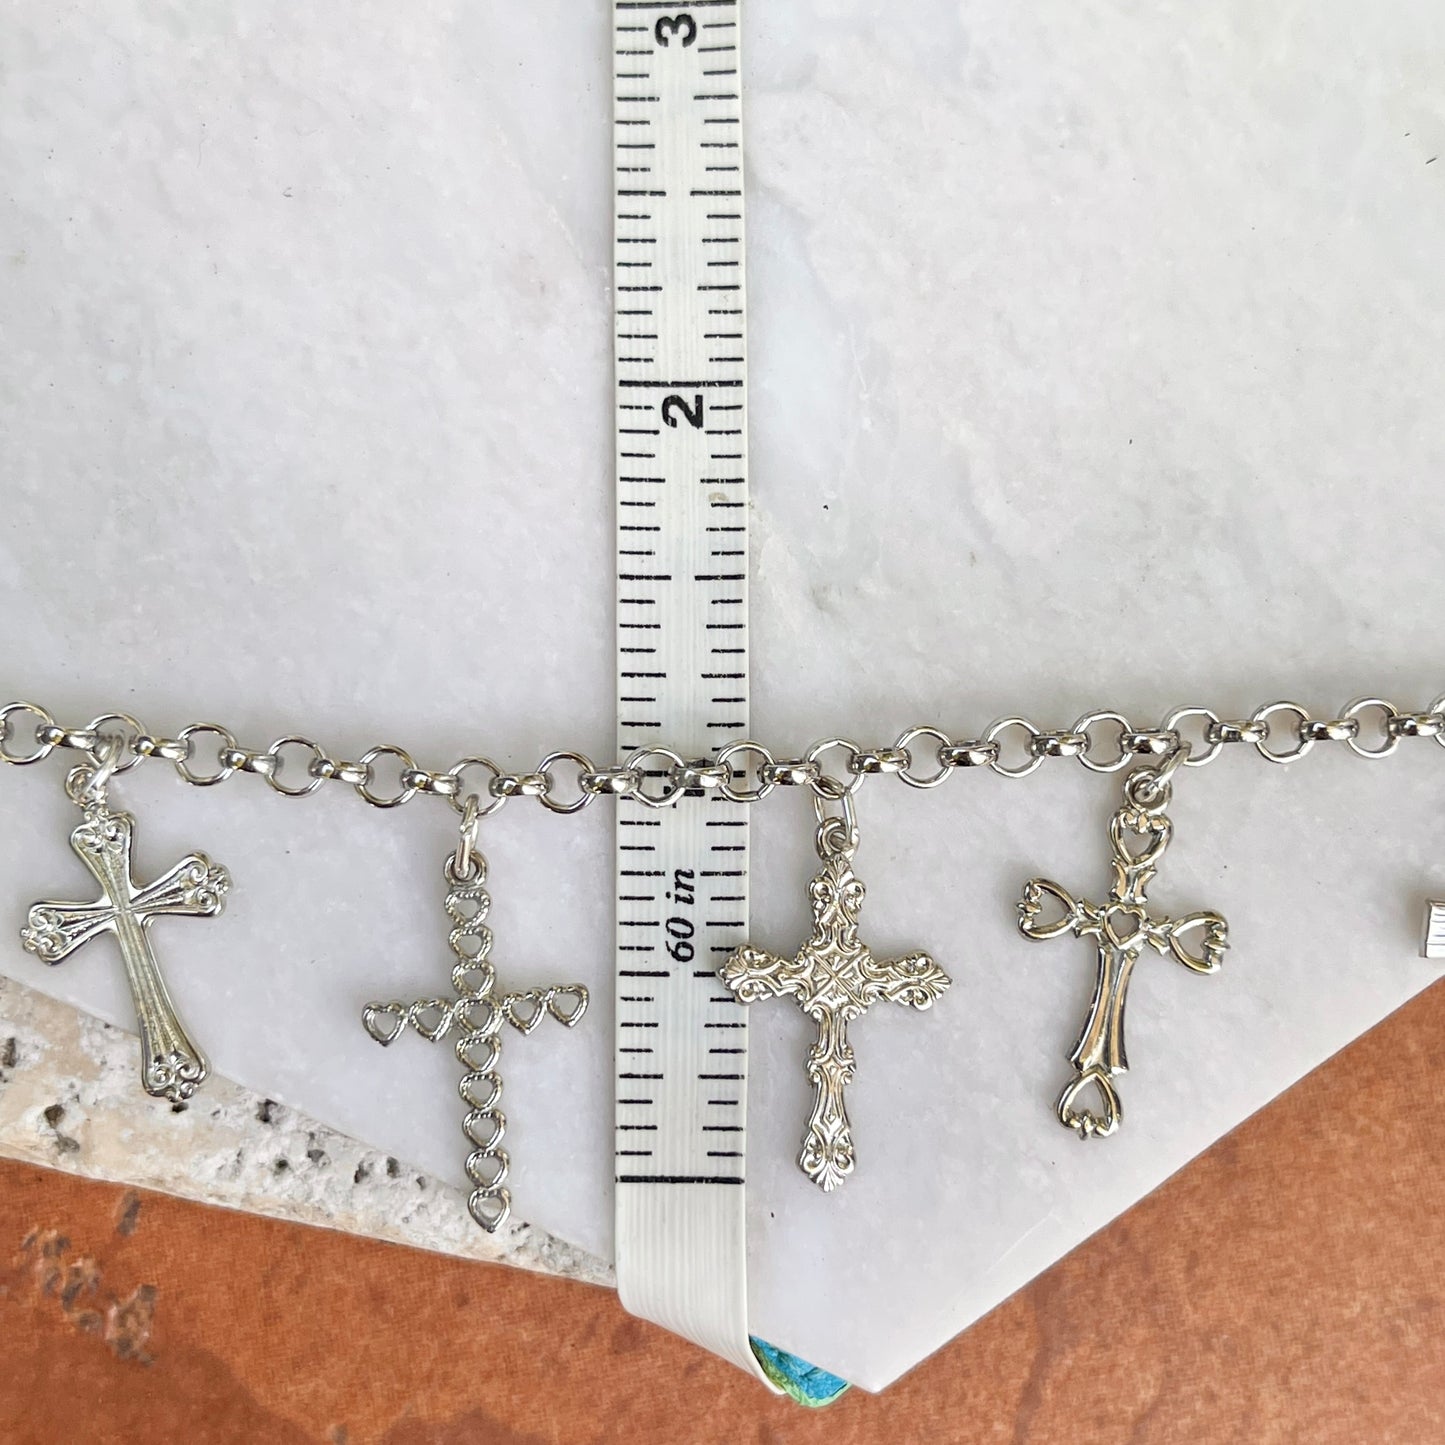 Sterling Silver Unique 8 Cross Charm Chain Bracelet